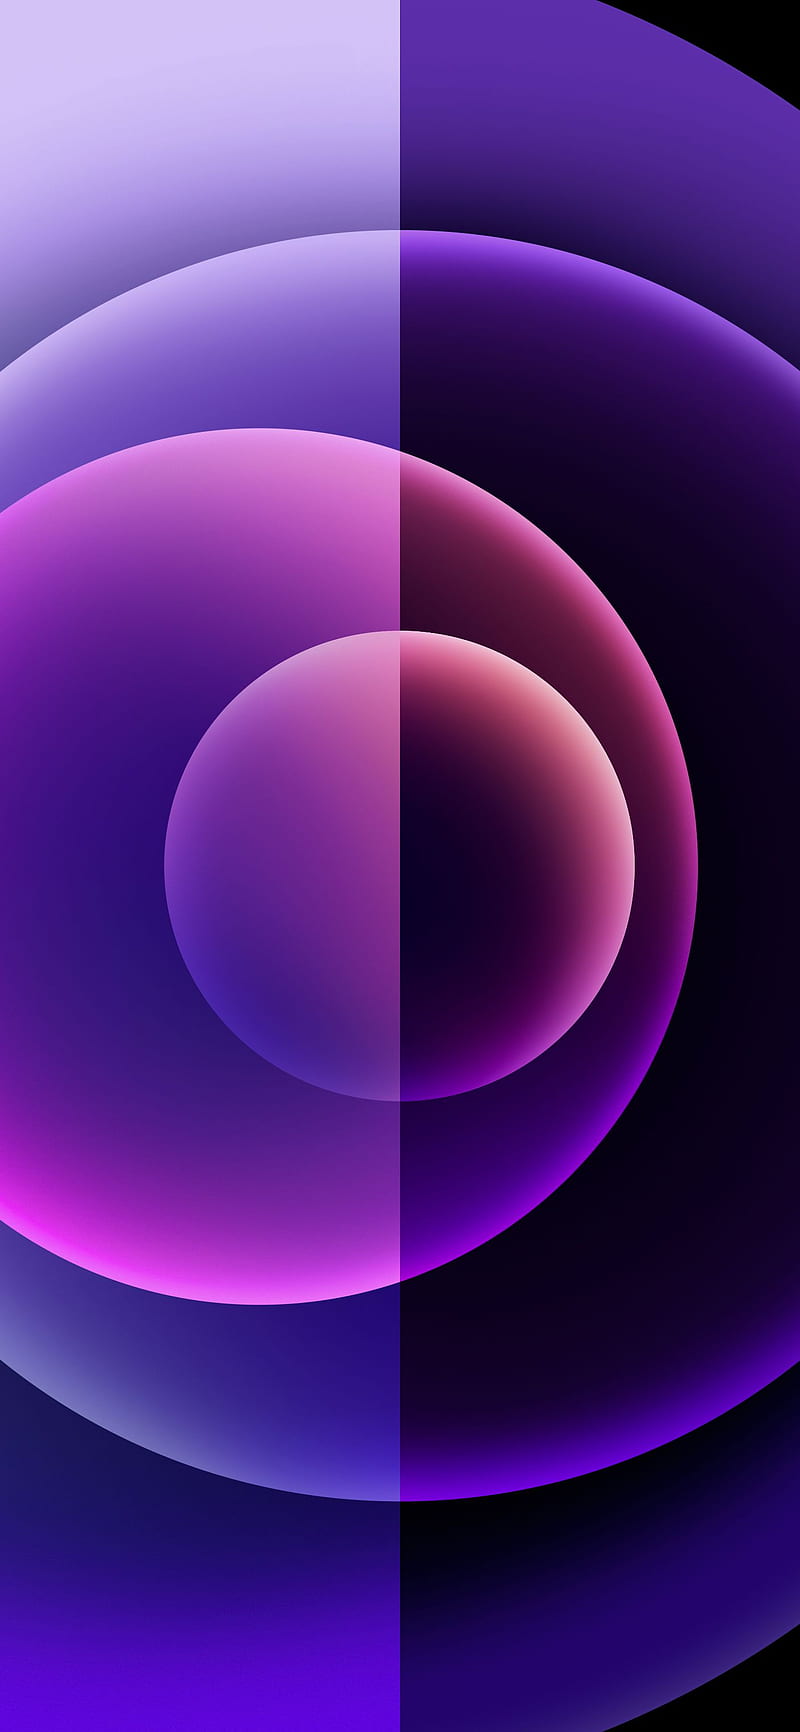 Hãy khám phá vẻ đẹp hoàn toàn mới của iPhone 12 Orbs Purple với thiết kế thanh lịch, màu sắc rực rỡ và công nghệ đẳng cấp. Nếu bạn đam mê công nghệ và muốn sở hữu một chiếc điện thoại thông minh đẳng cấp, hãy xem ngay hình ảnh liên quan đến iPhone 12 Purple của chúng tôi.